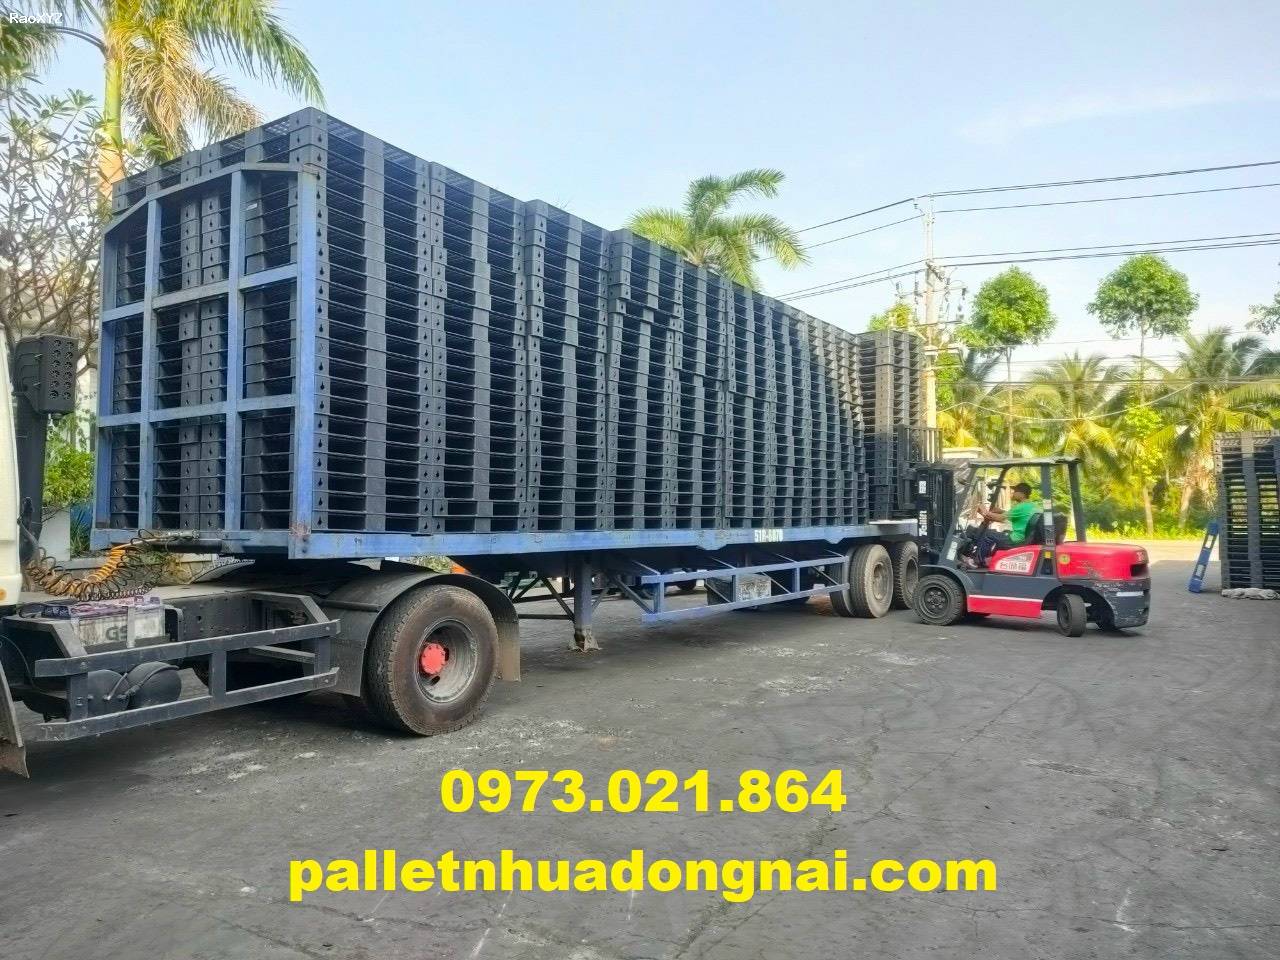 Pallet nhựa tại Bình Thuận, liên hệ 0973021864 (24/7)